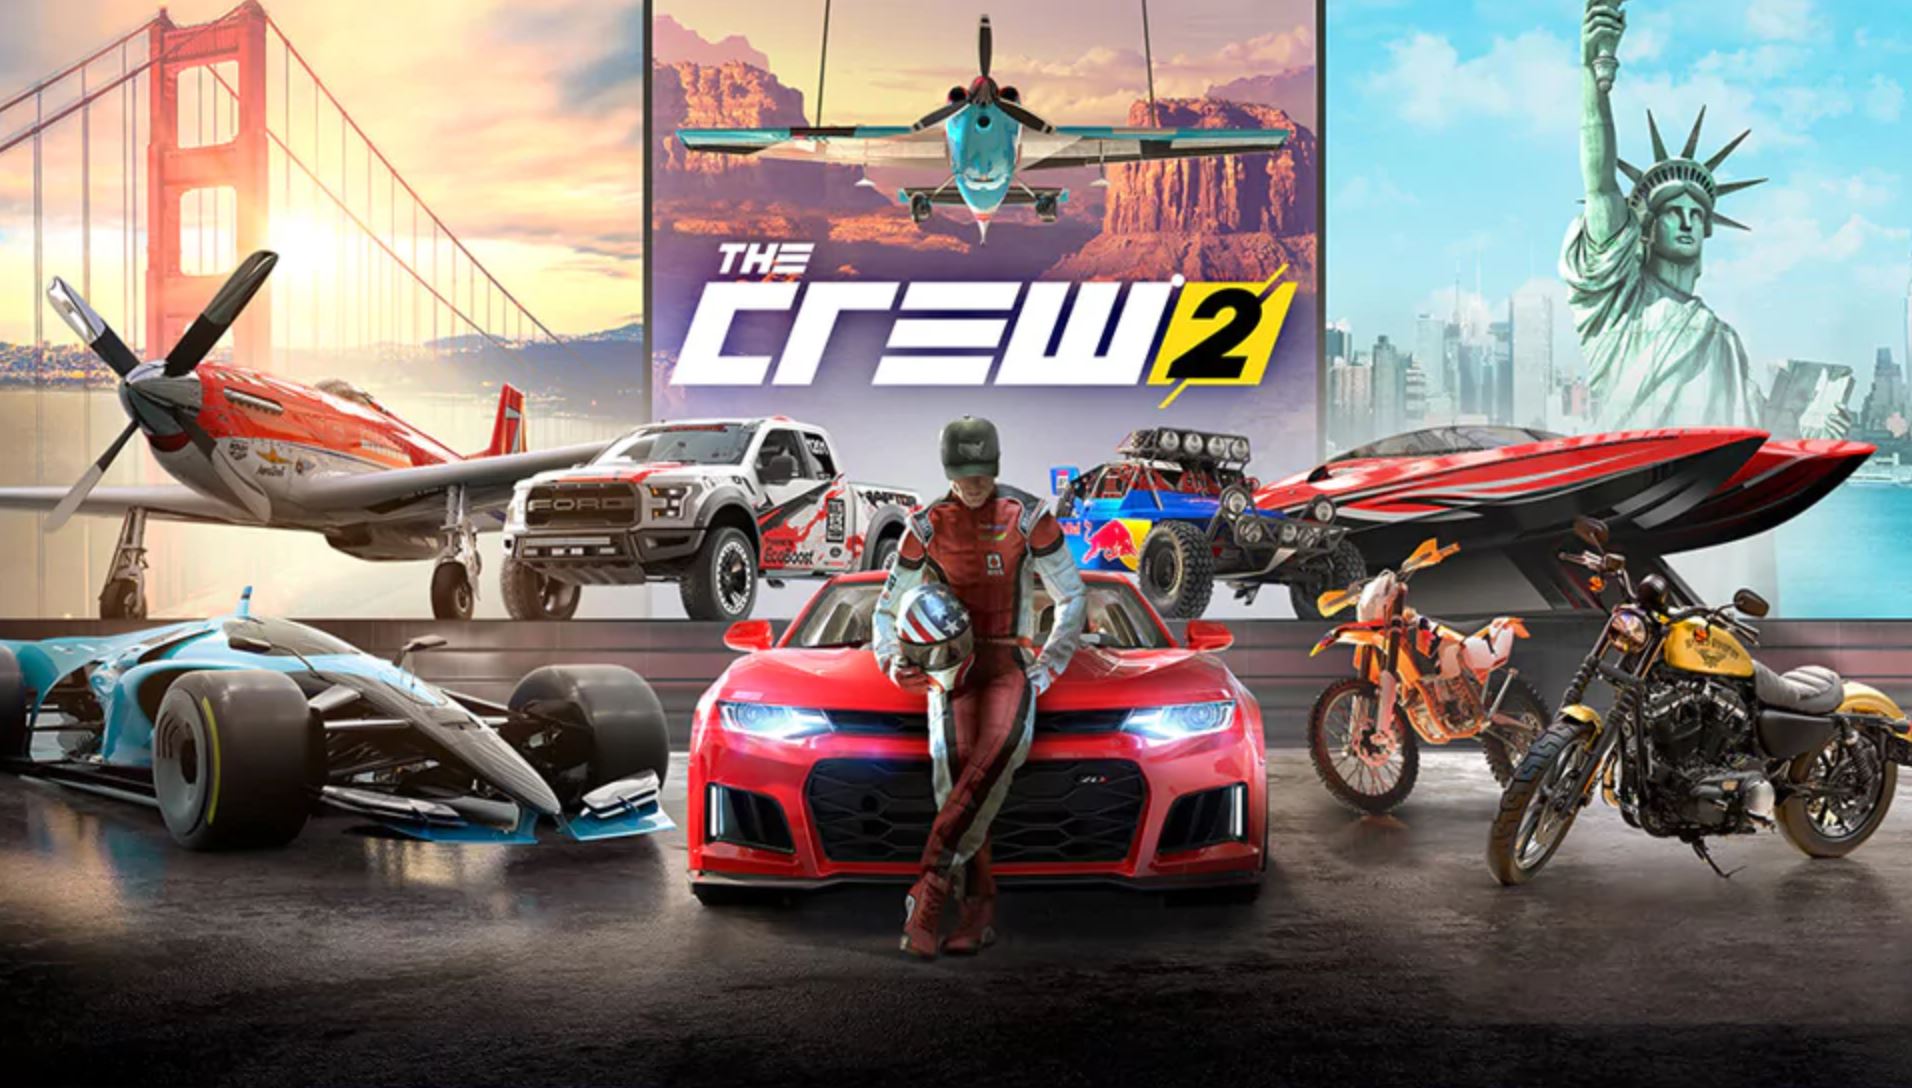 The Crew 2 PC Specs Revealed